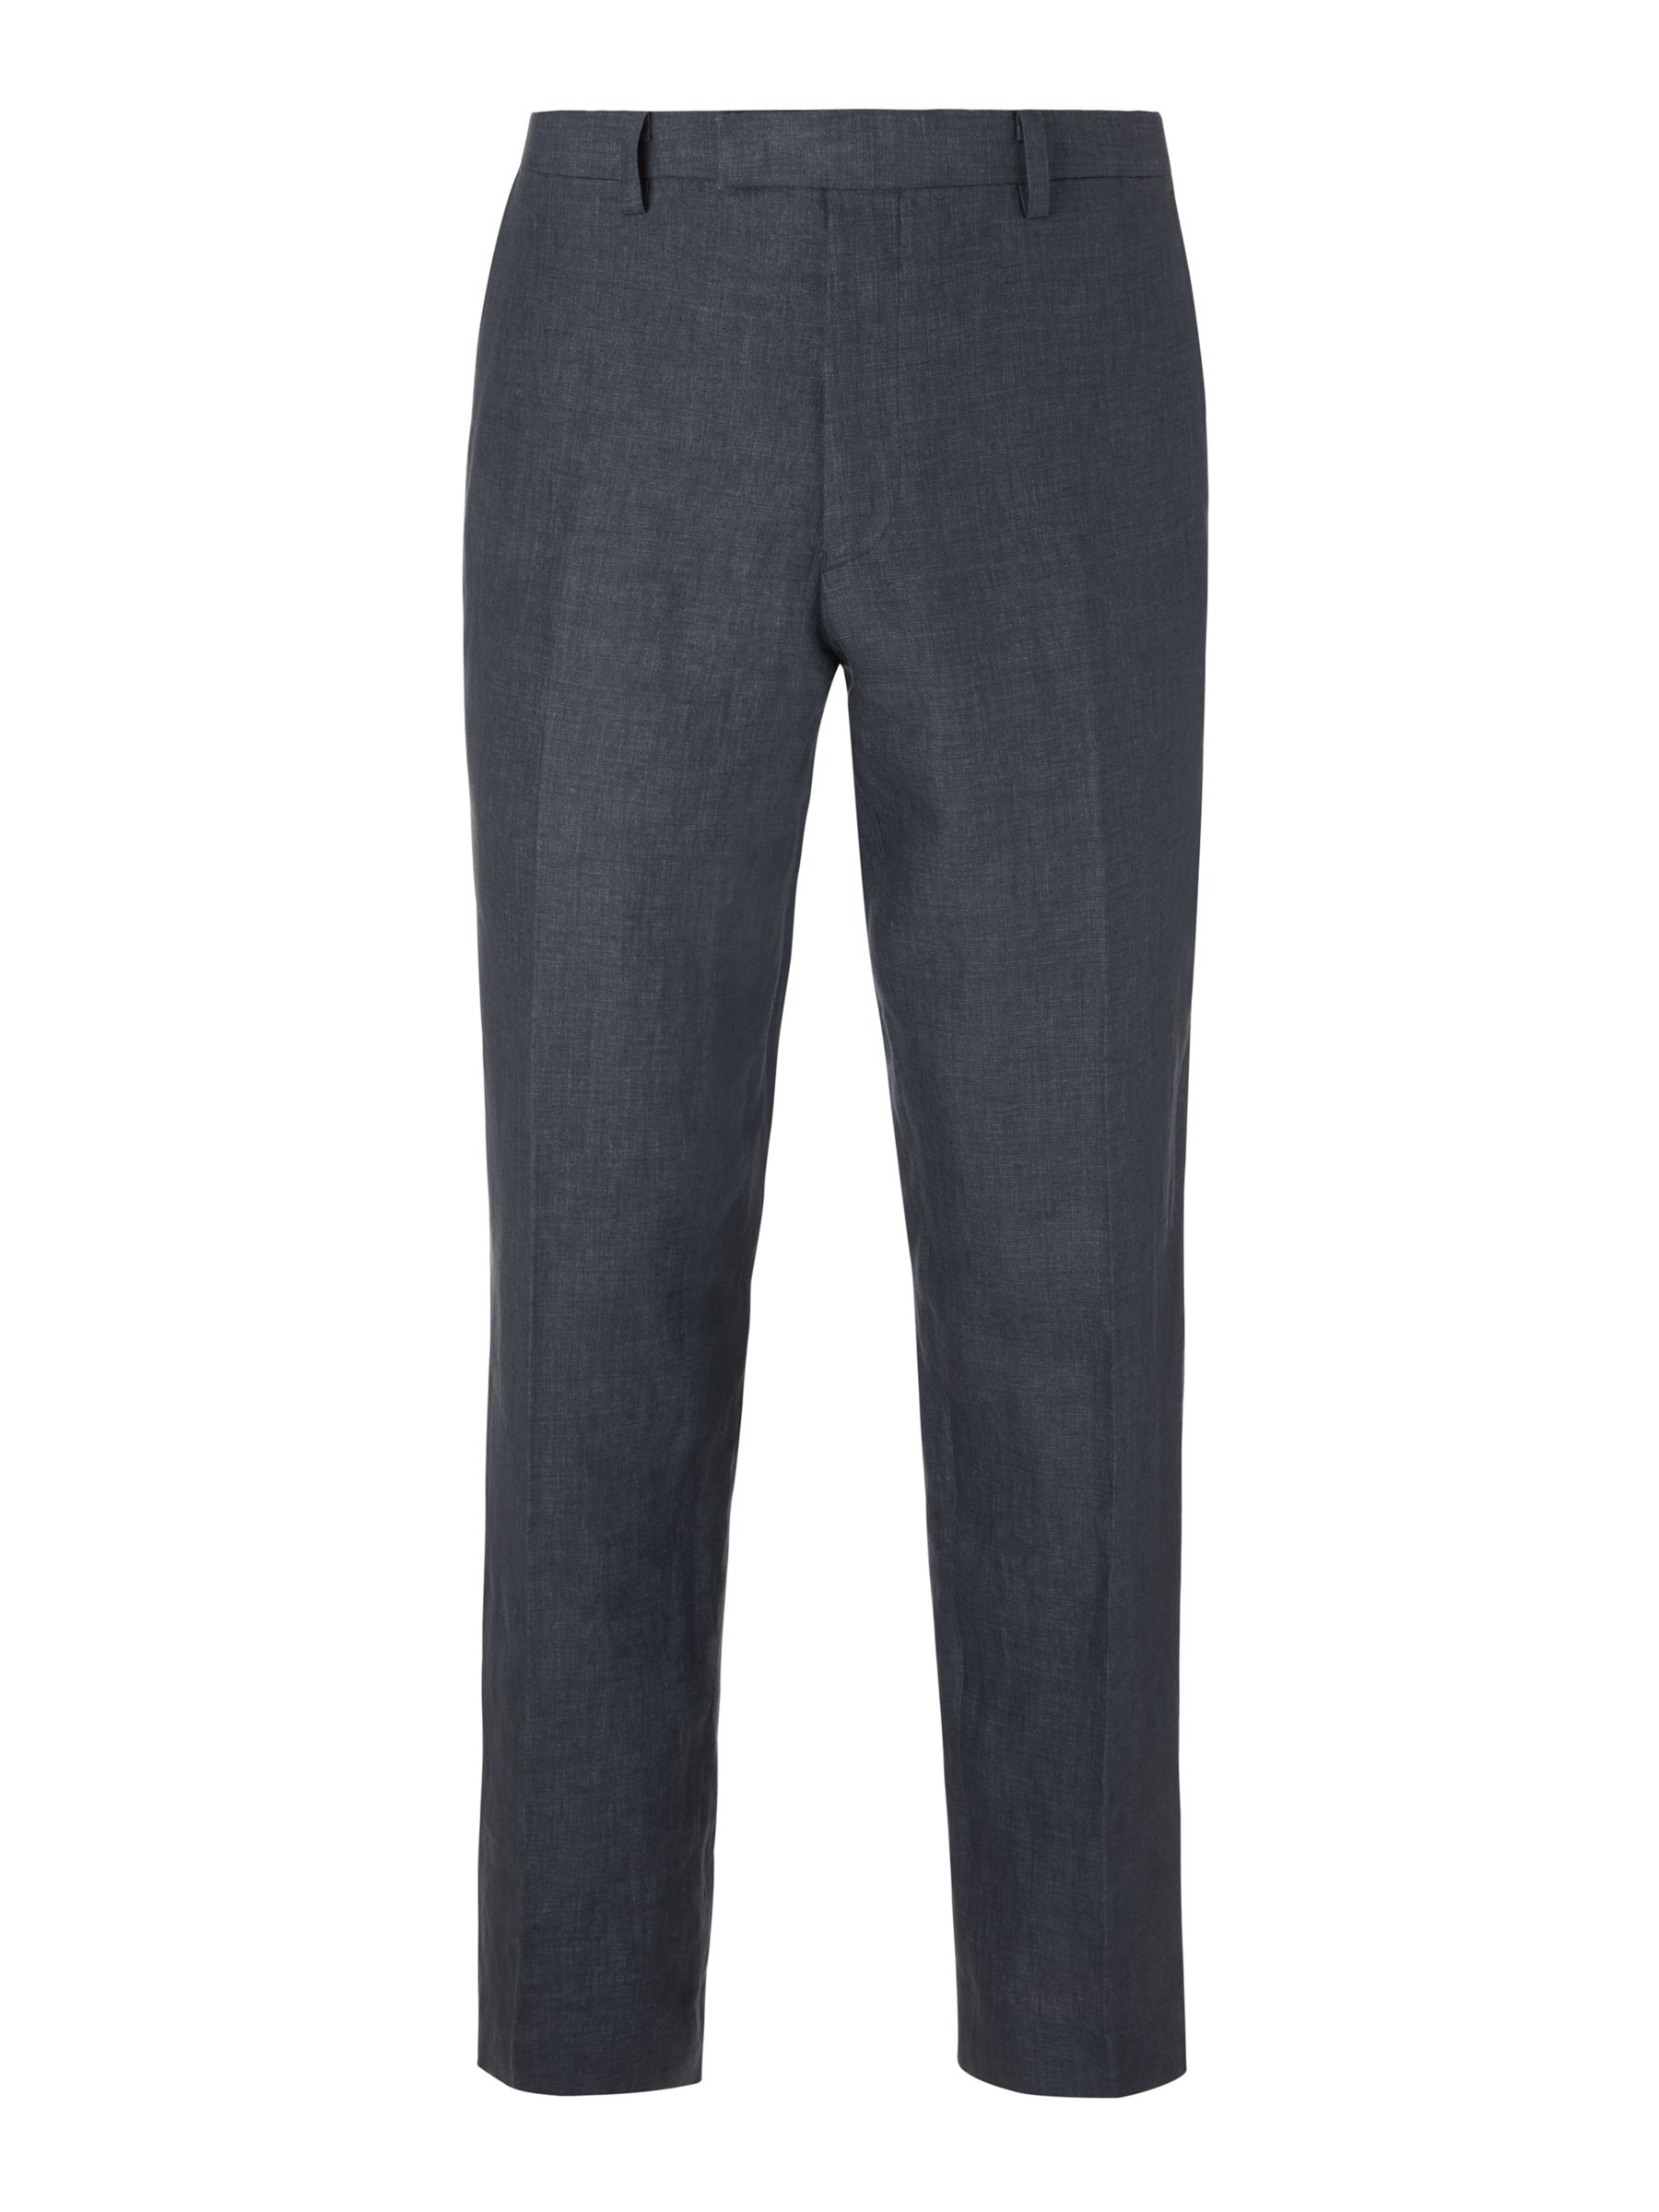 John Lewis Linen Regular Fit Suit Trousers, Navy